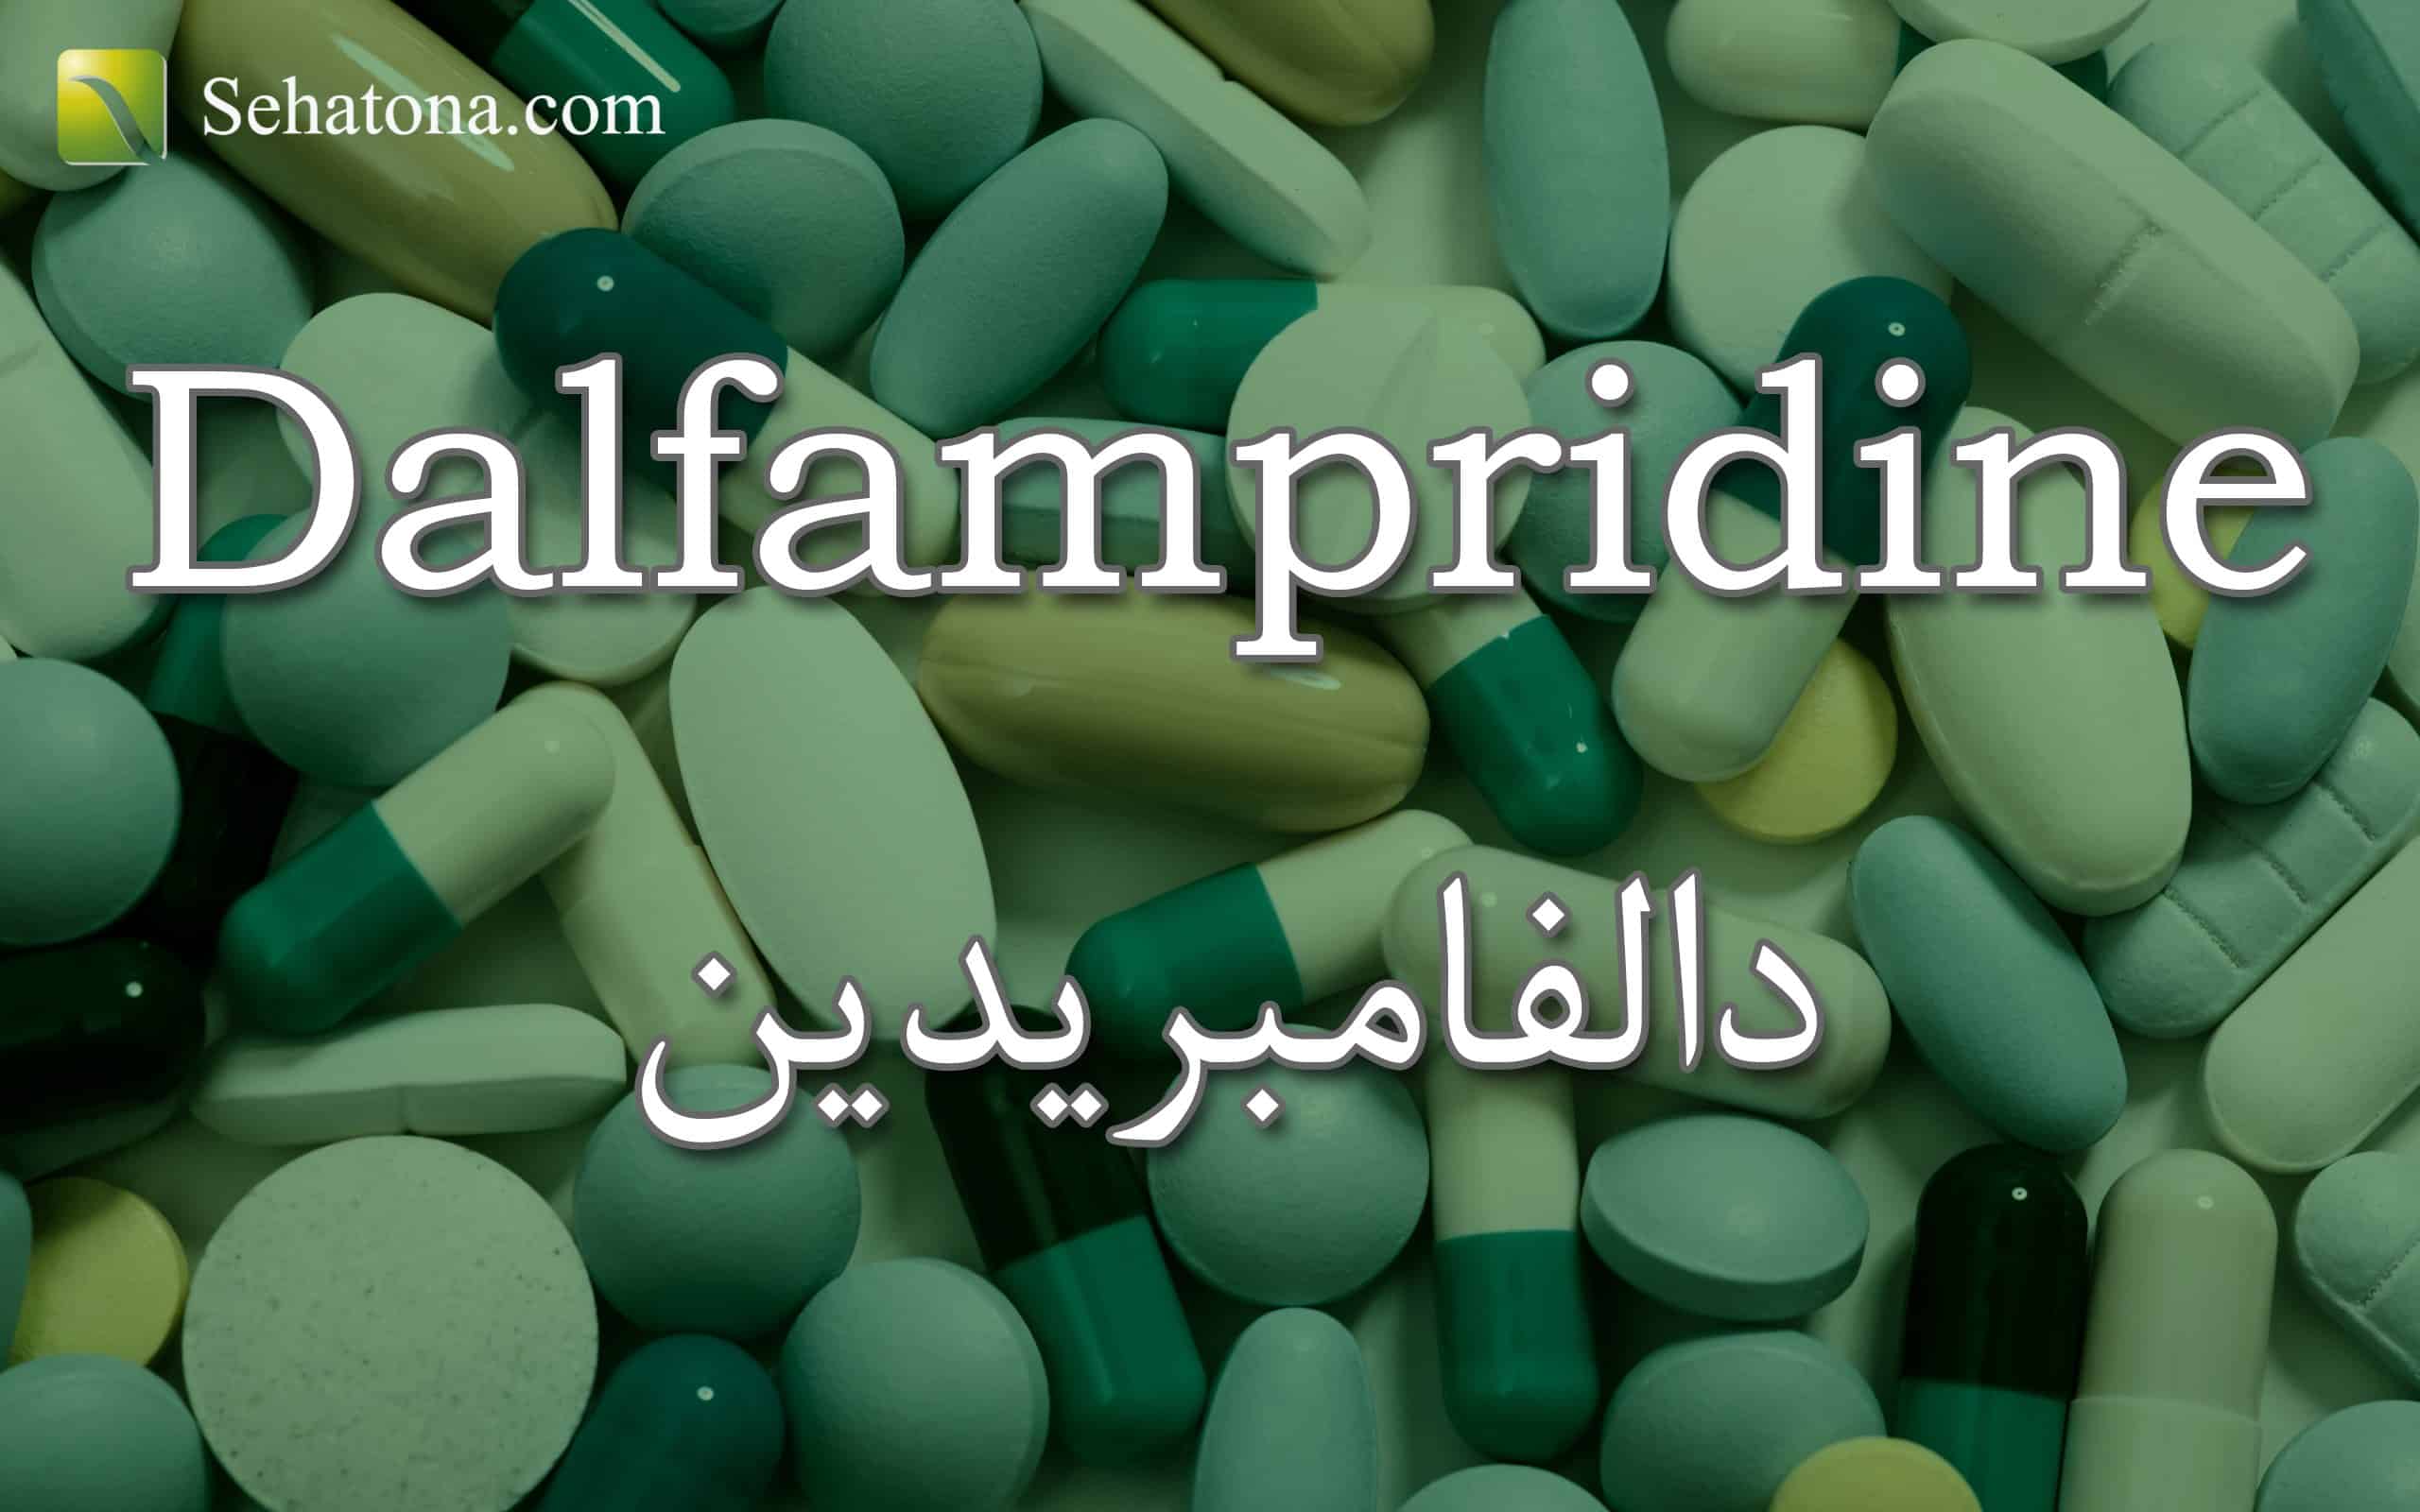 Dalfampridine